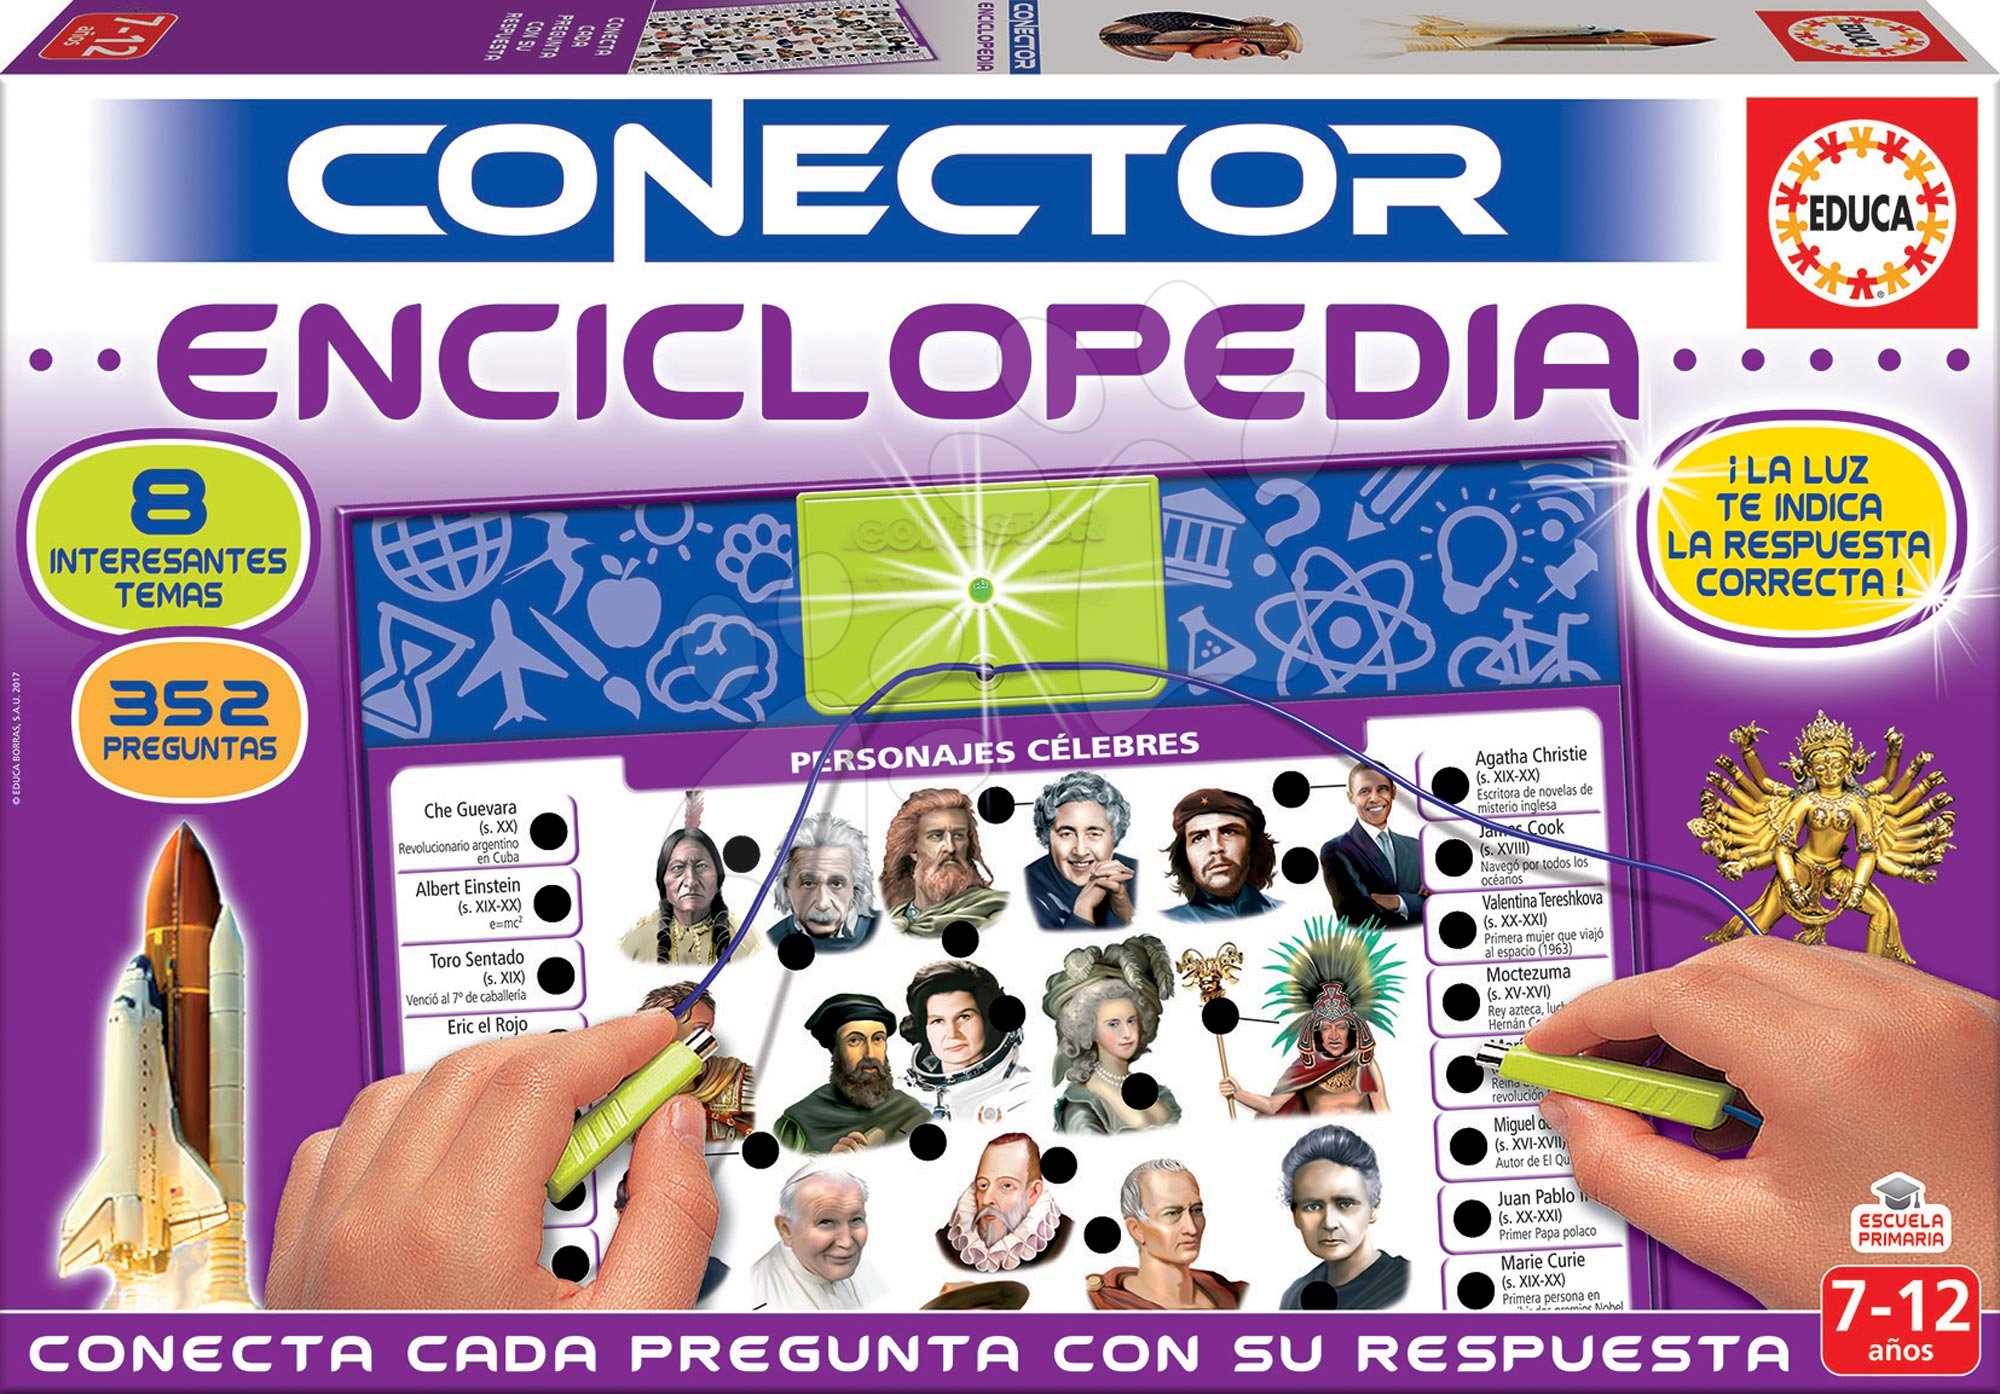 Társasjáték Conector Enciclopedia Educa spanyol nyelvű 352 kérdés 7-12 korosztálynak